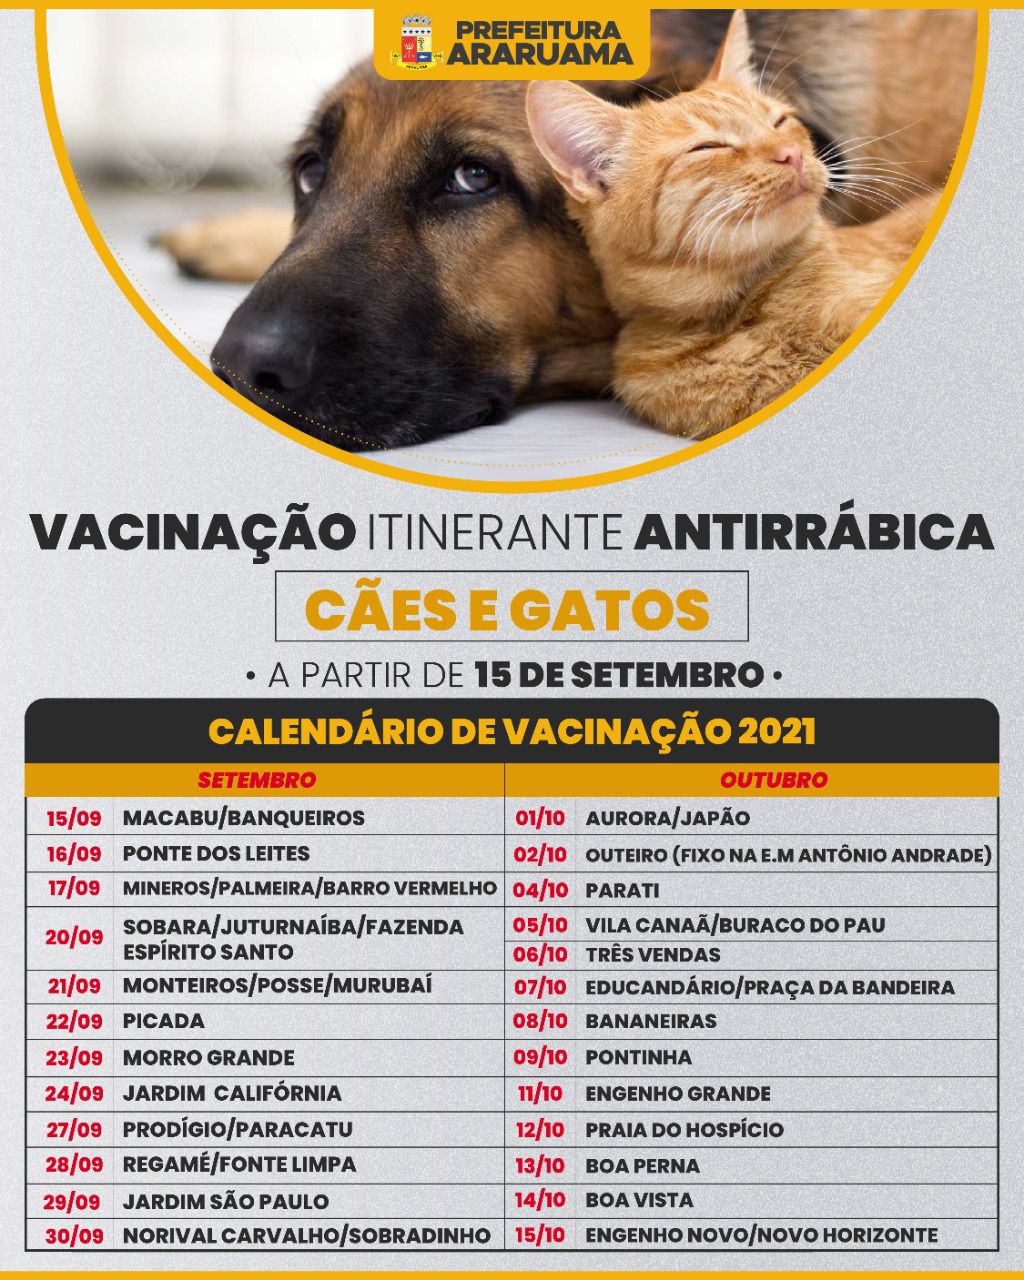 Prefeitura de Araruama vai realizar campanha de vacinação antirrábica itinerante no município